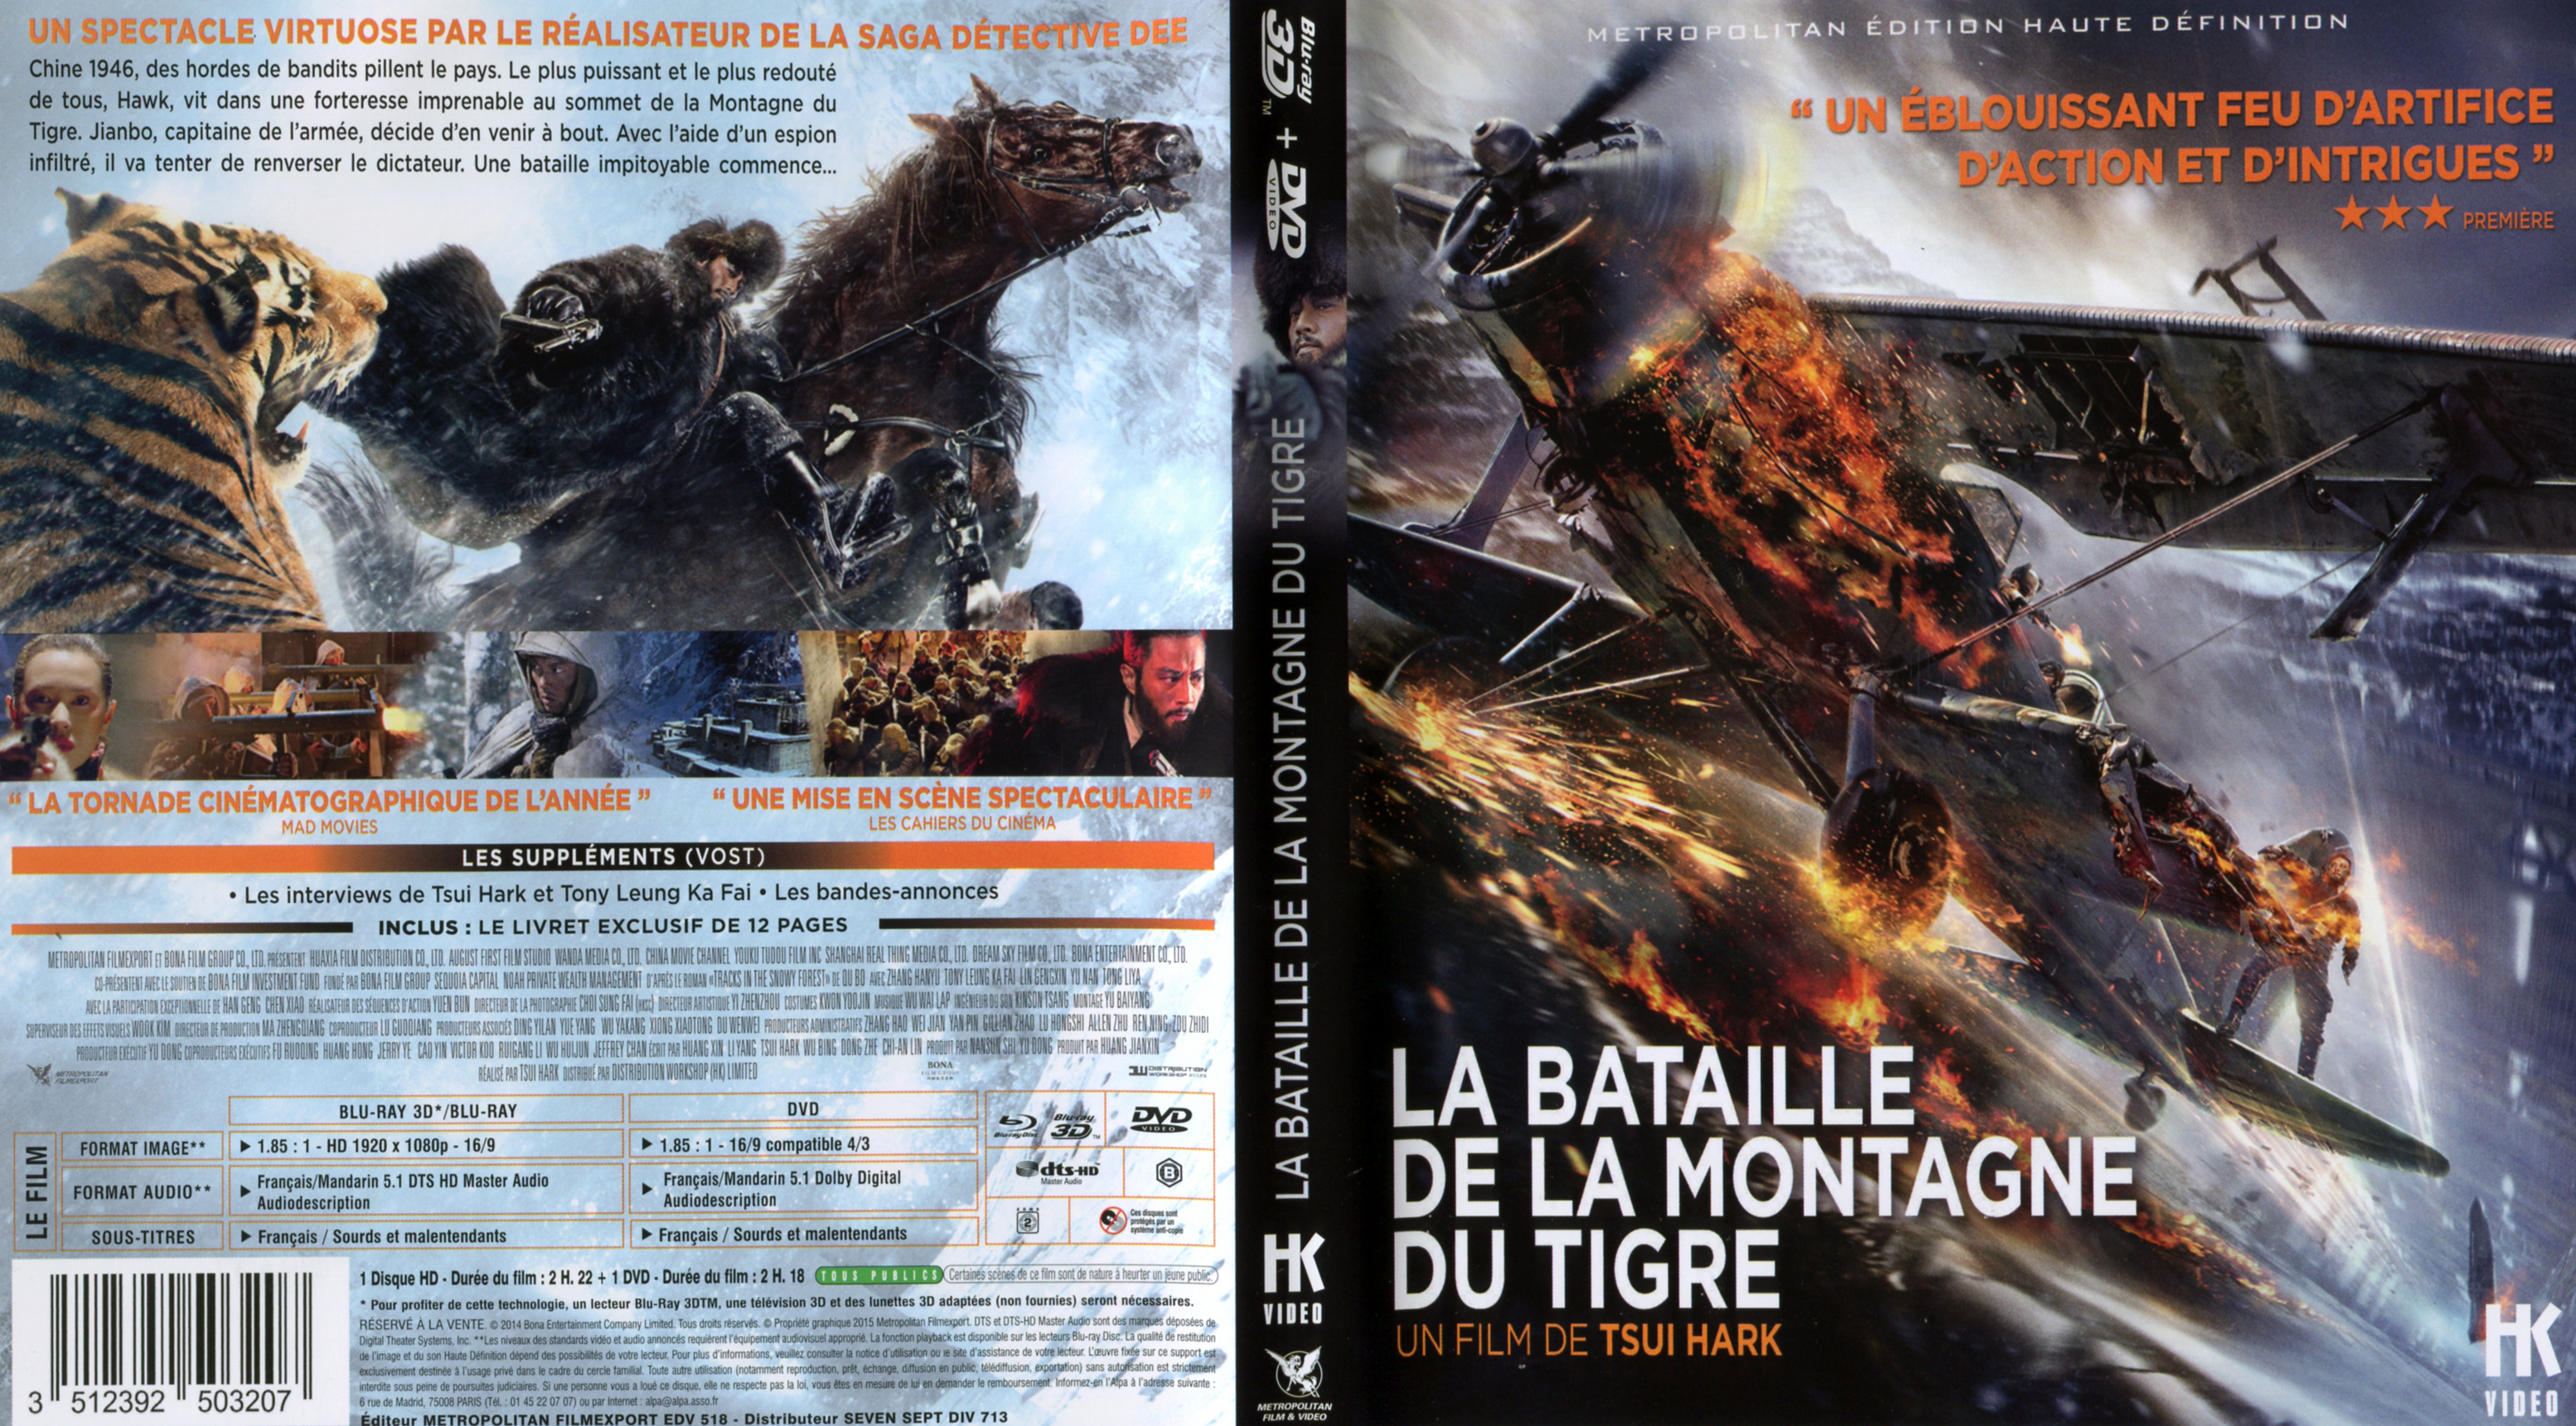 Jaquette DVD La Bataille de la Montagne du Tigre (BLU-RAY)